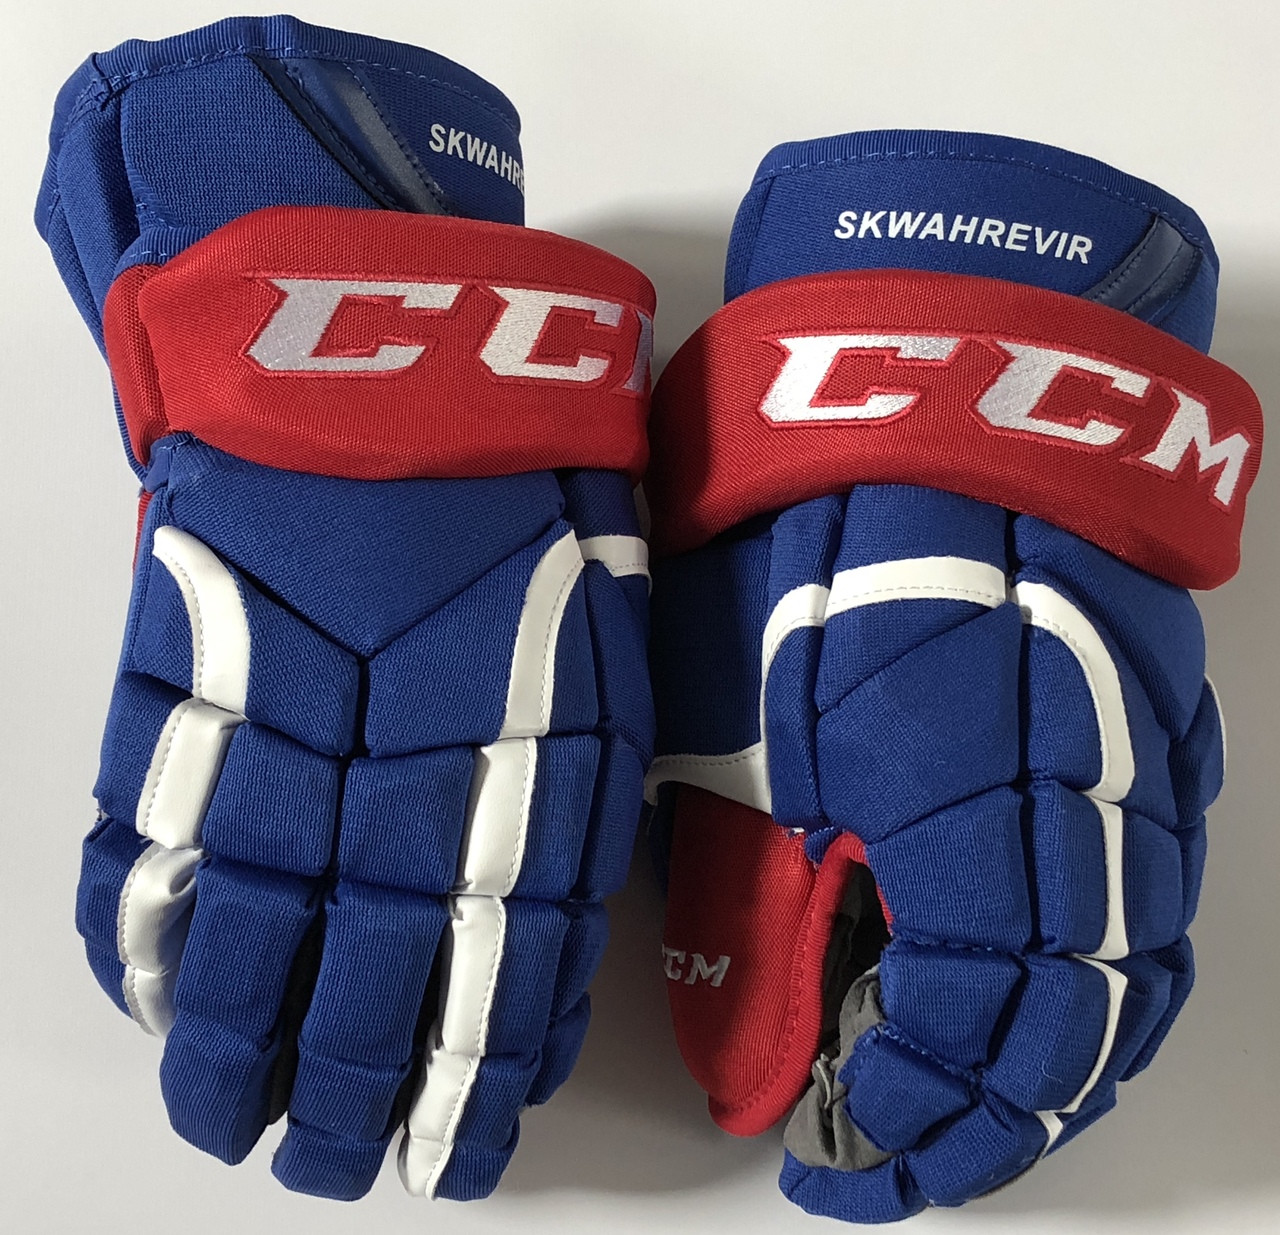 Перчатки 12 лет. Ccm hg12 перчатки. Краги ccm Pro stock hg12 Gloves. Ccm 30k краги. Краги ccm Pro 14.